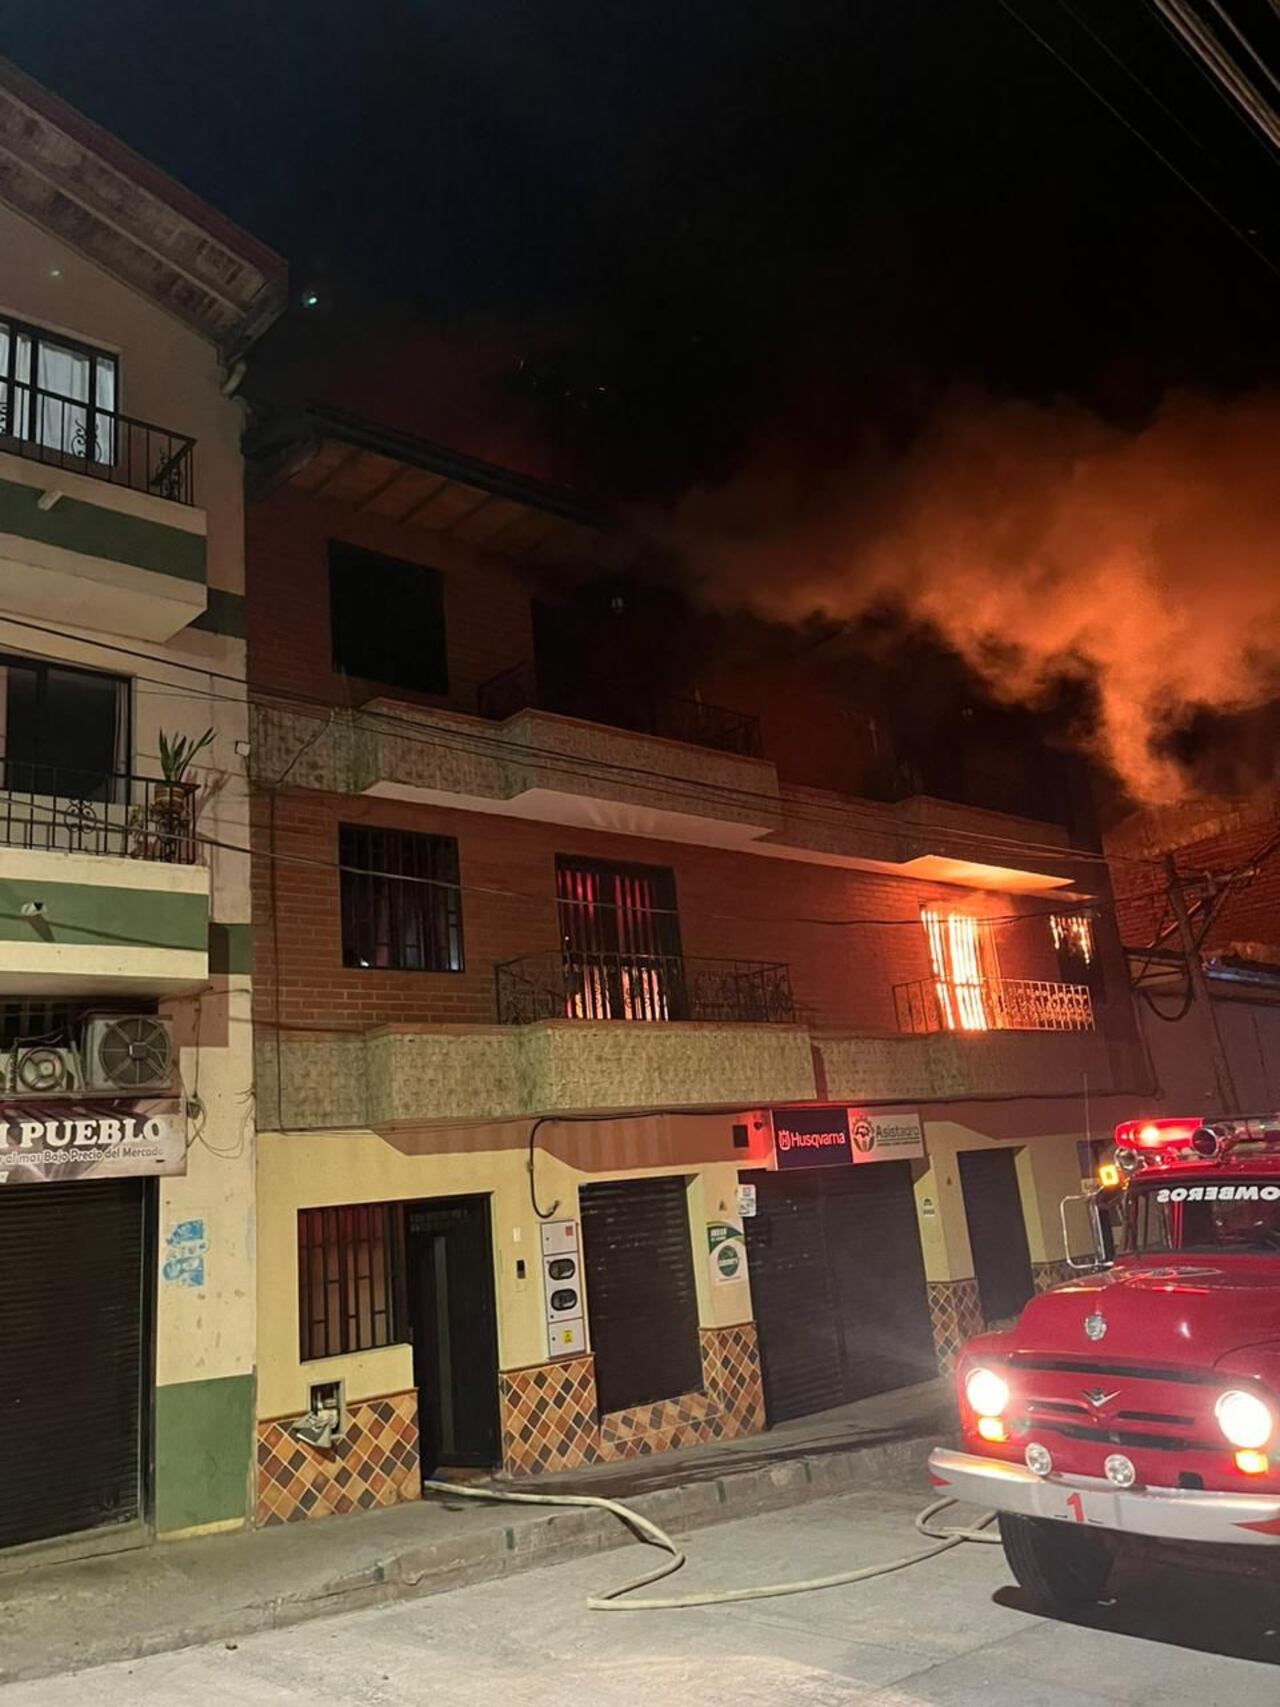 Proyecto de ciclismo en Antioquia está afectado tras grave incendio